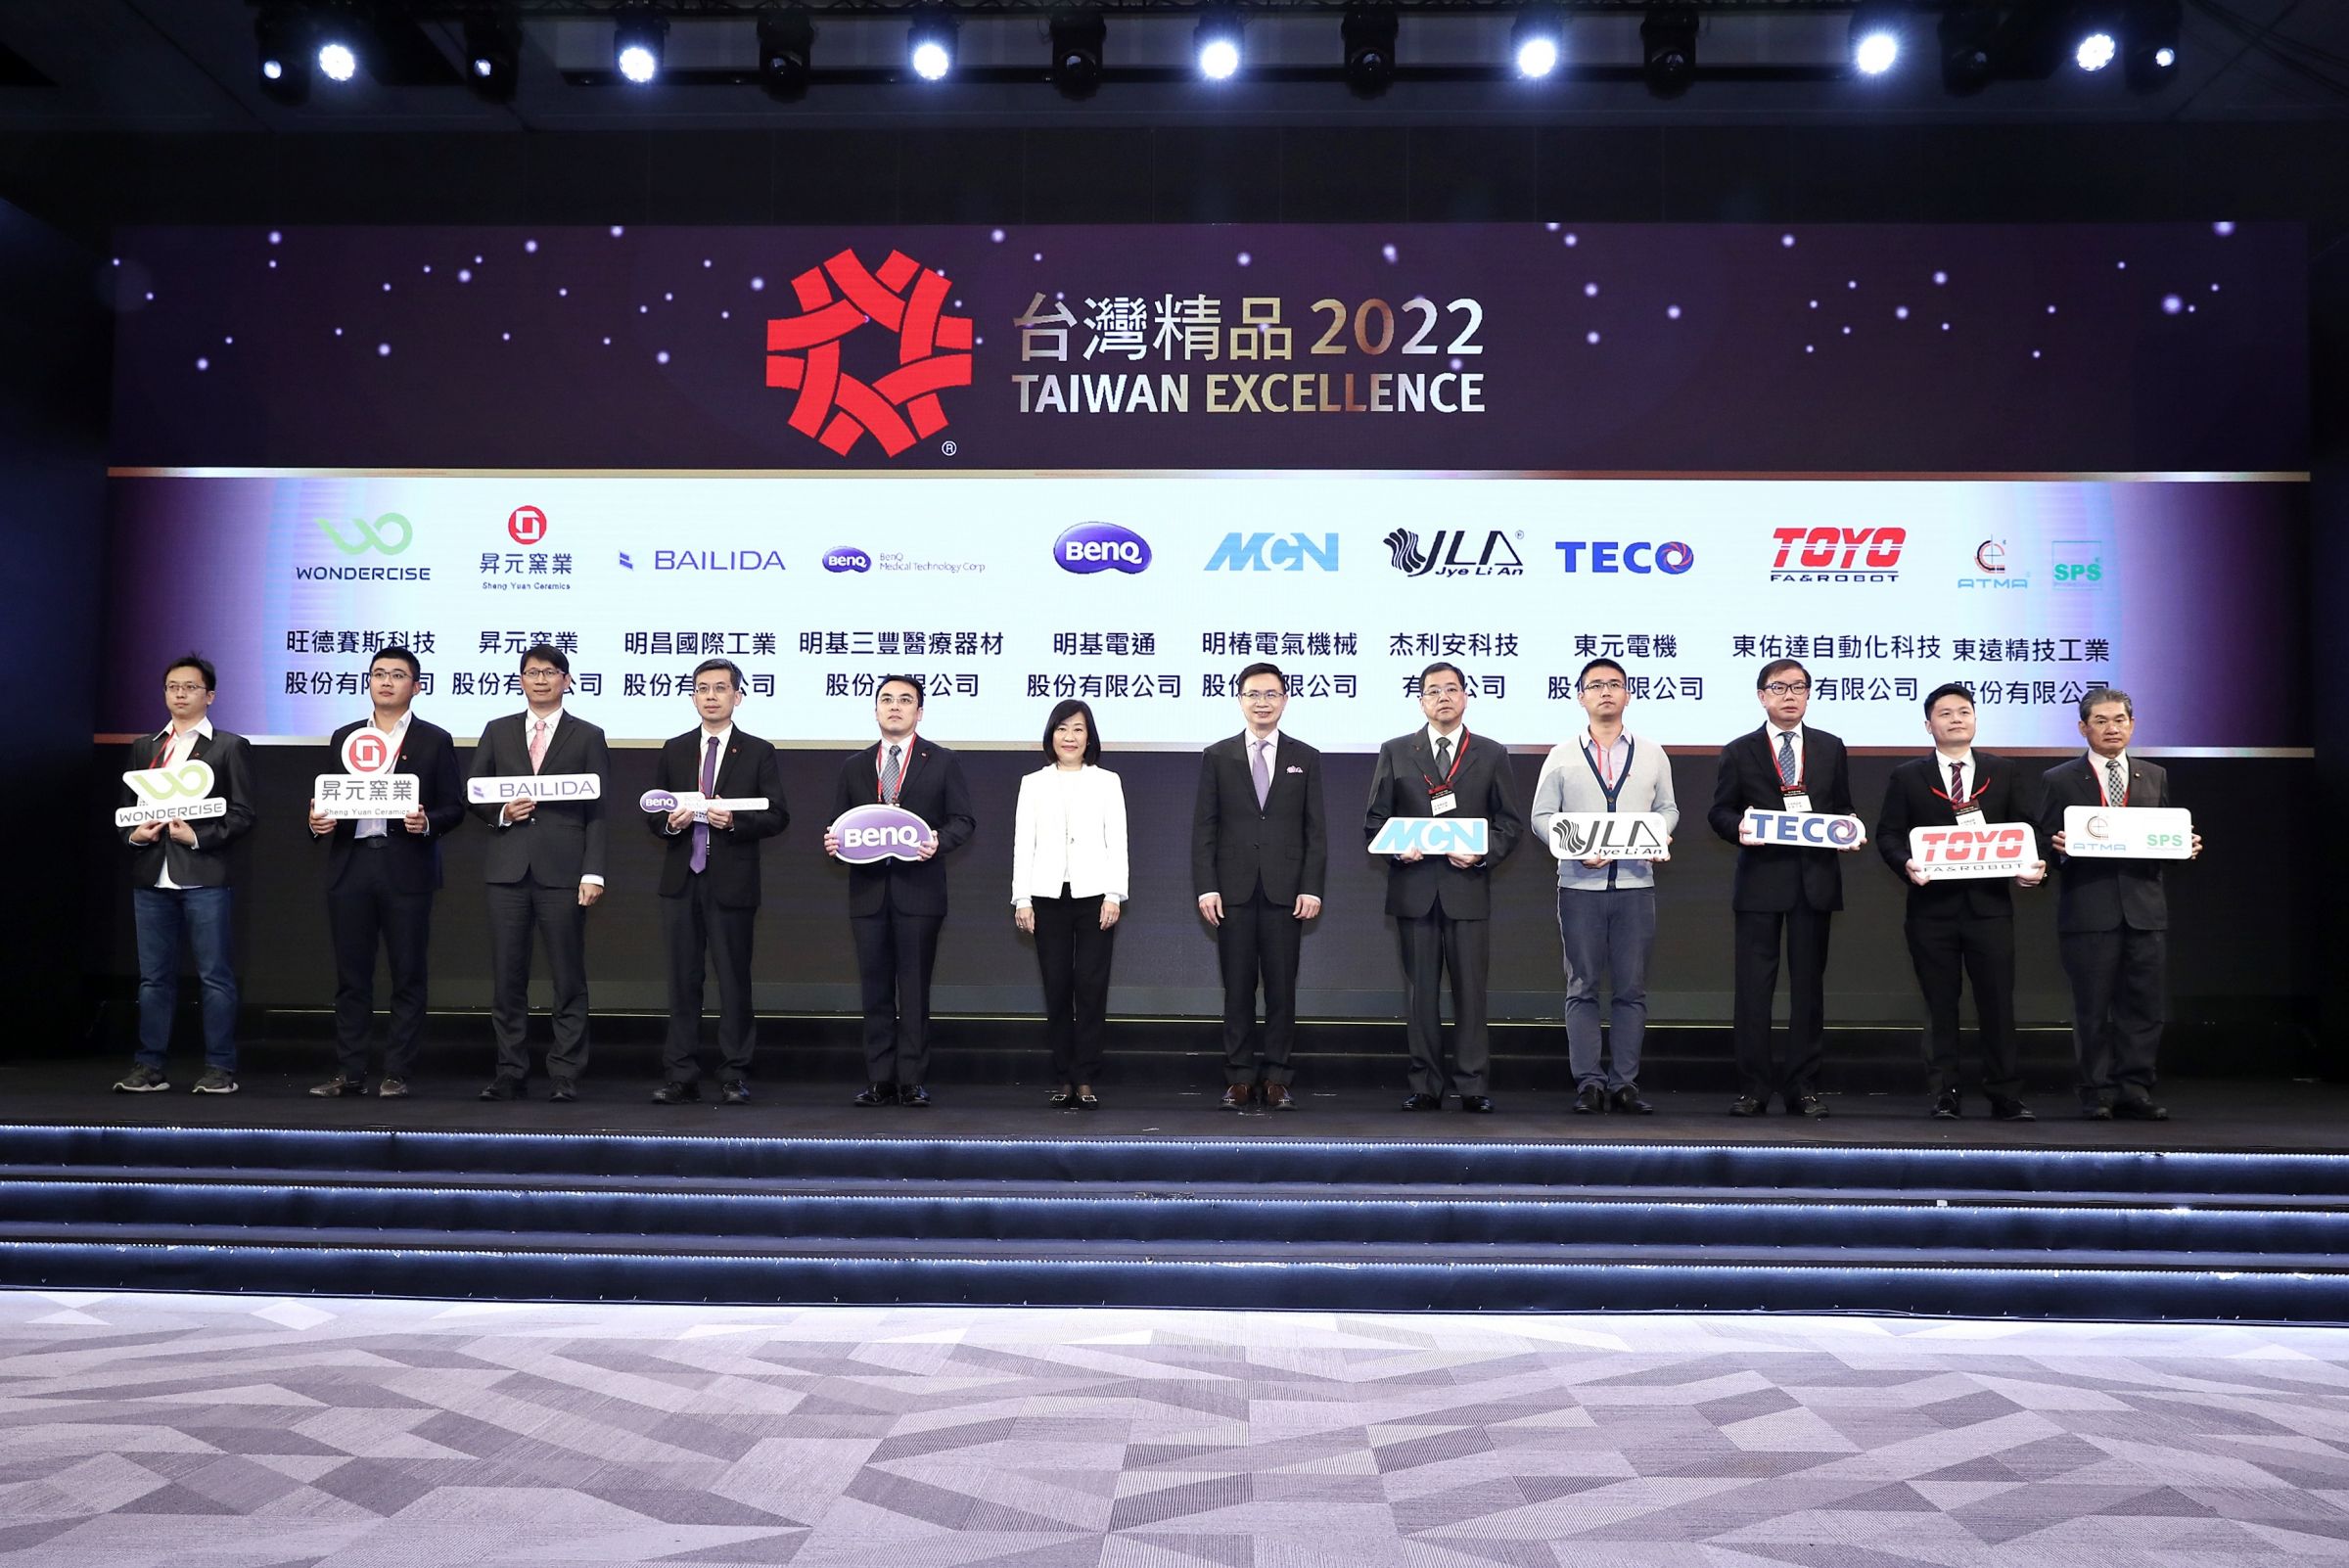 2021年11月24日《頒獎典禮》，陳東欽董事長(右一)接受頒獎，實至名歸，與經營理念之價值『堅持最高品質承諾』不謀而合。